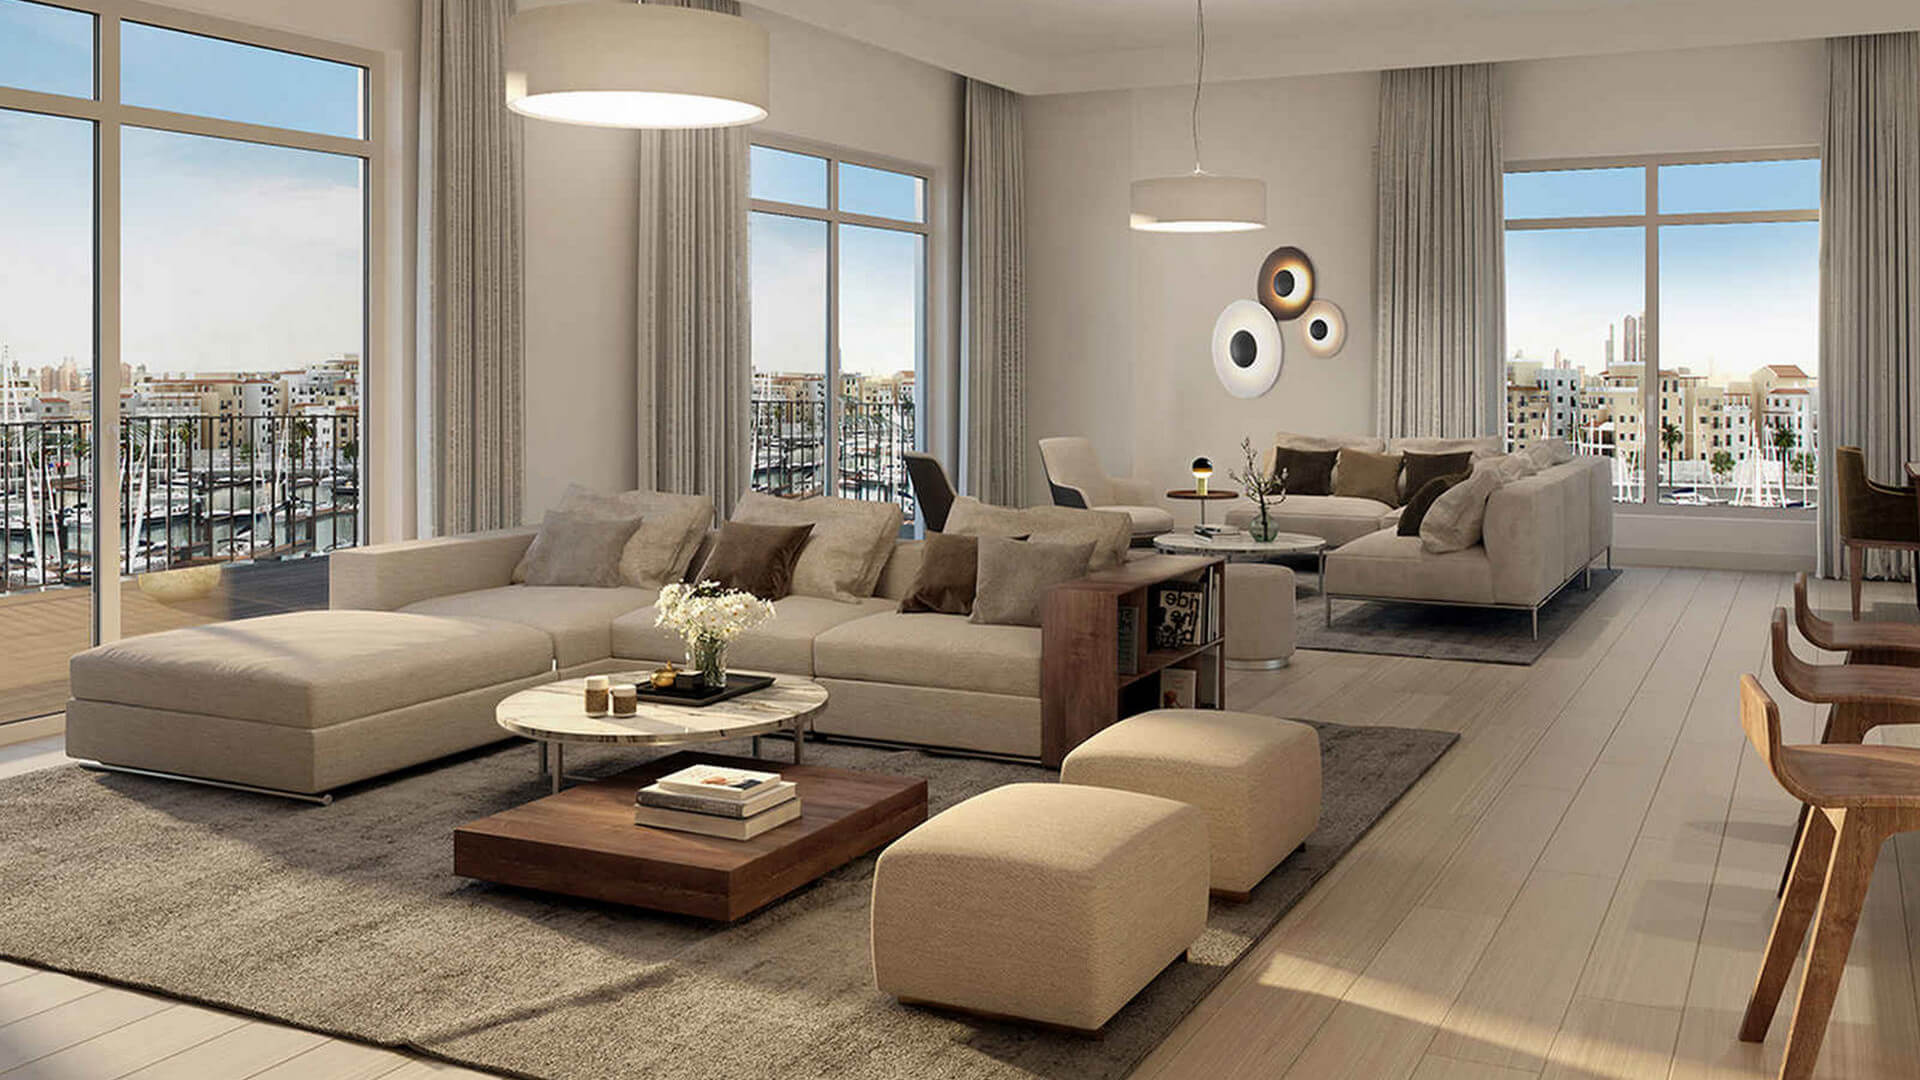 Продажа квартиры в Дубай, ОАЭ, 1374 м2, №24261 – фото 1